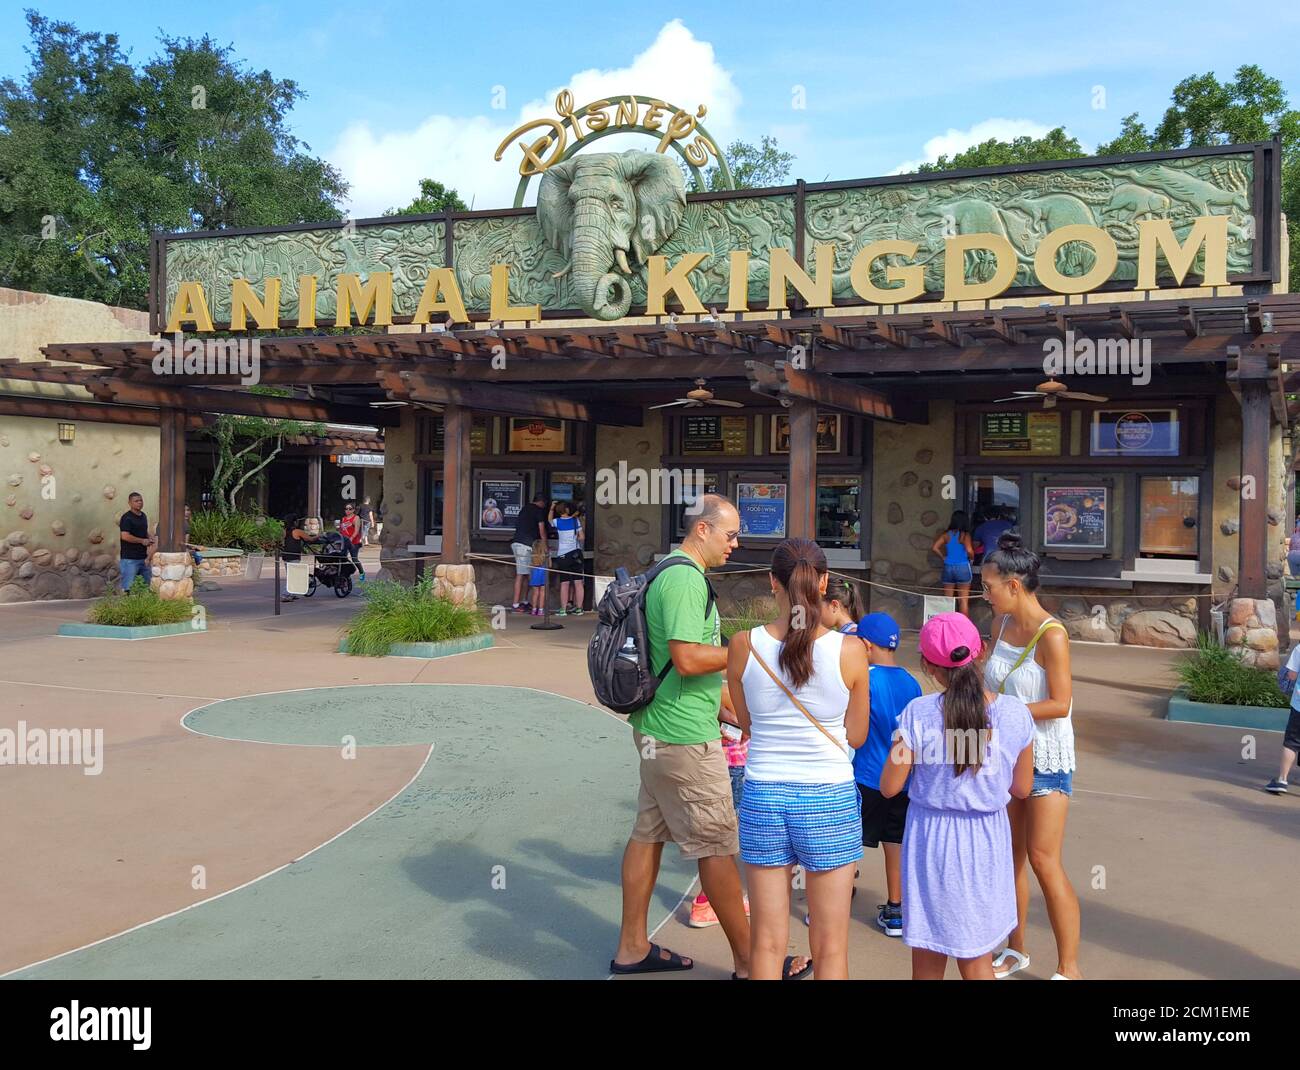 La entrada a Disney's Animal Kingdom, Orlando, Florida, Estados Unidos Foto de stock